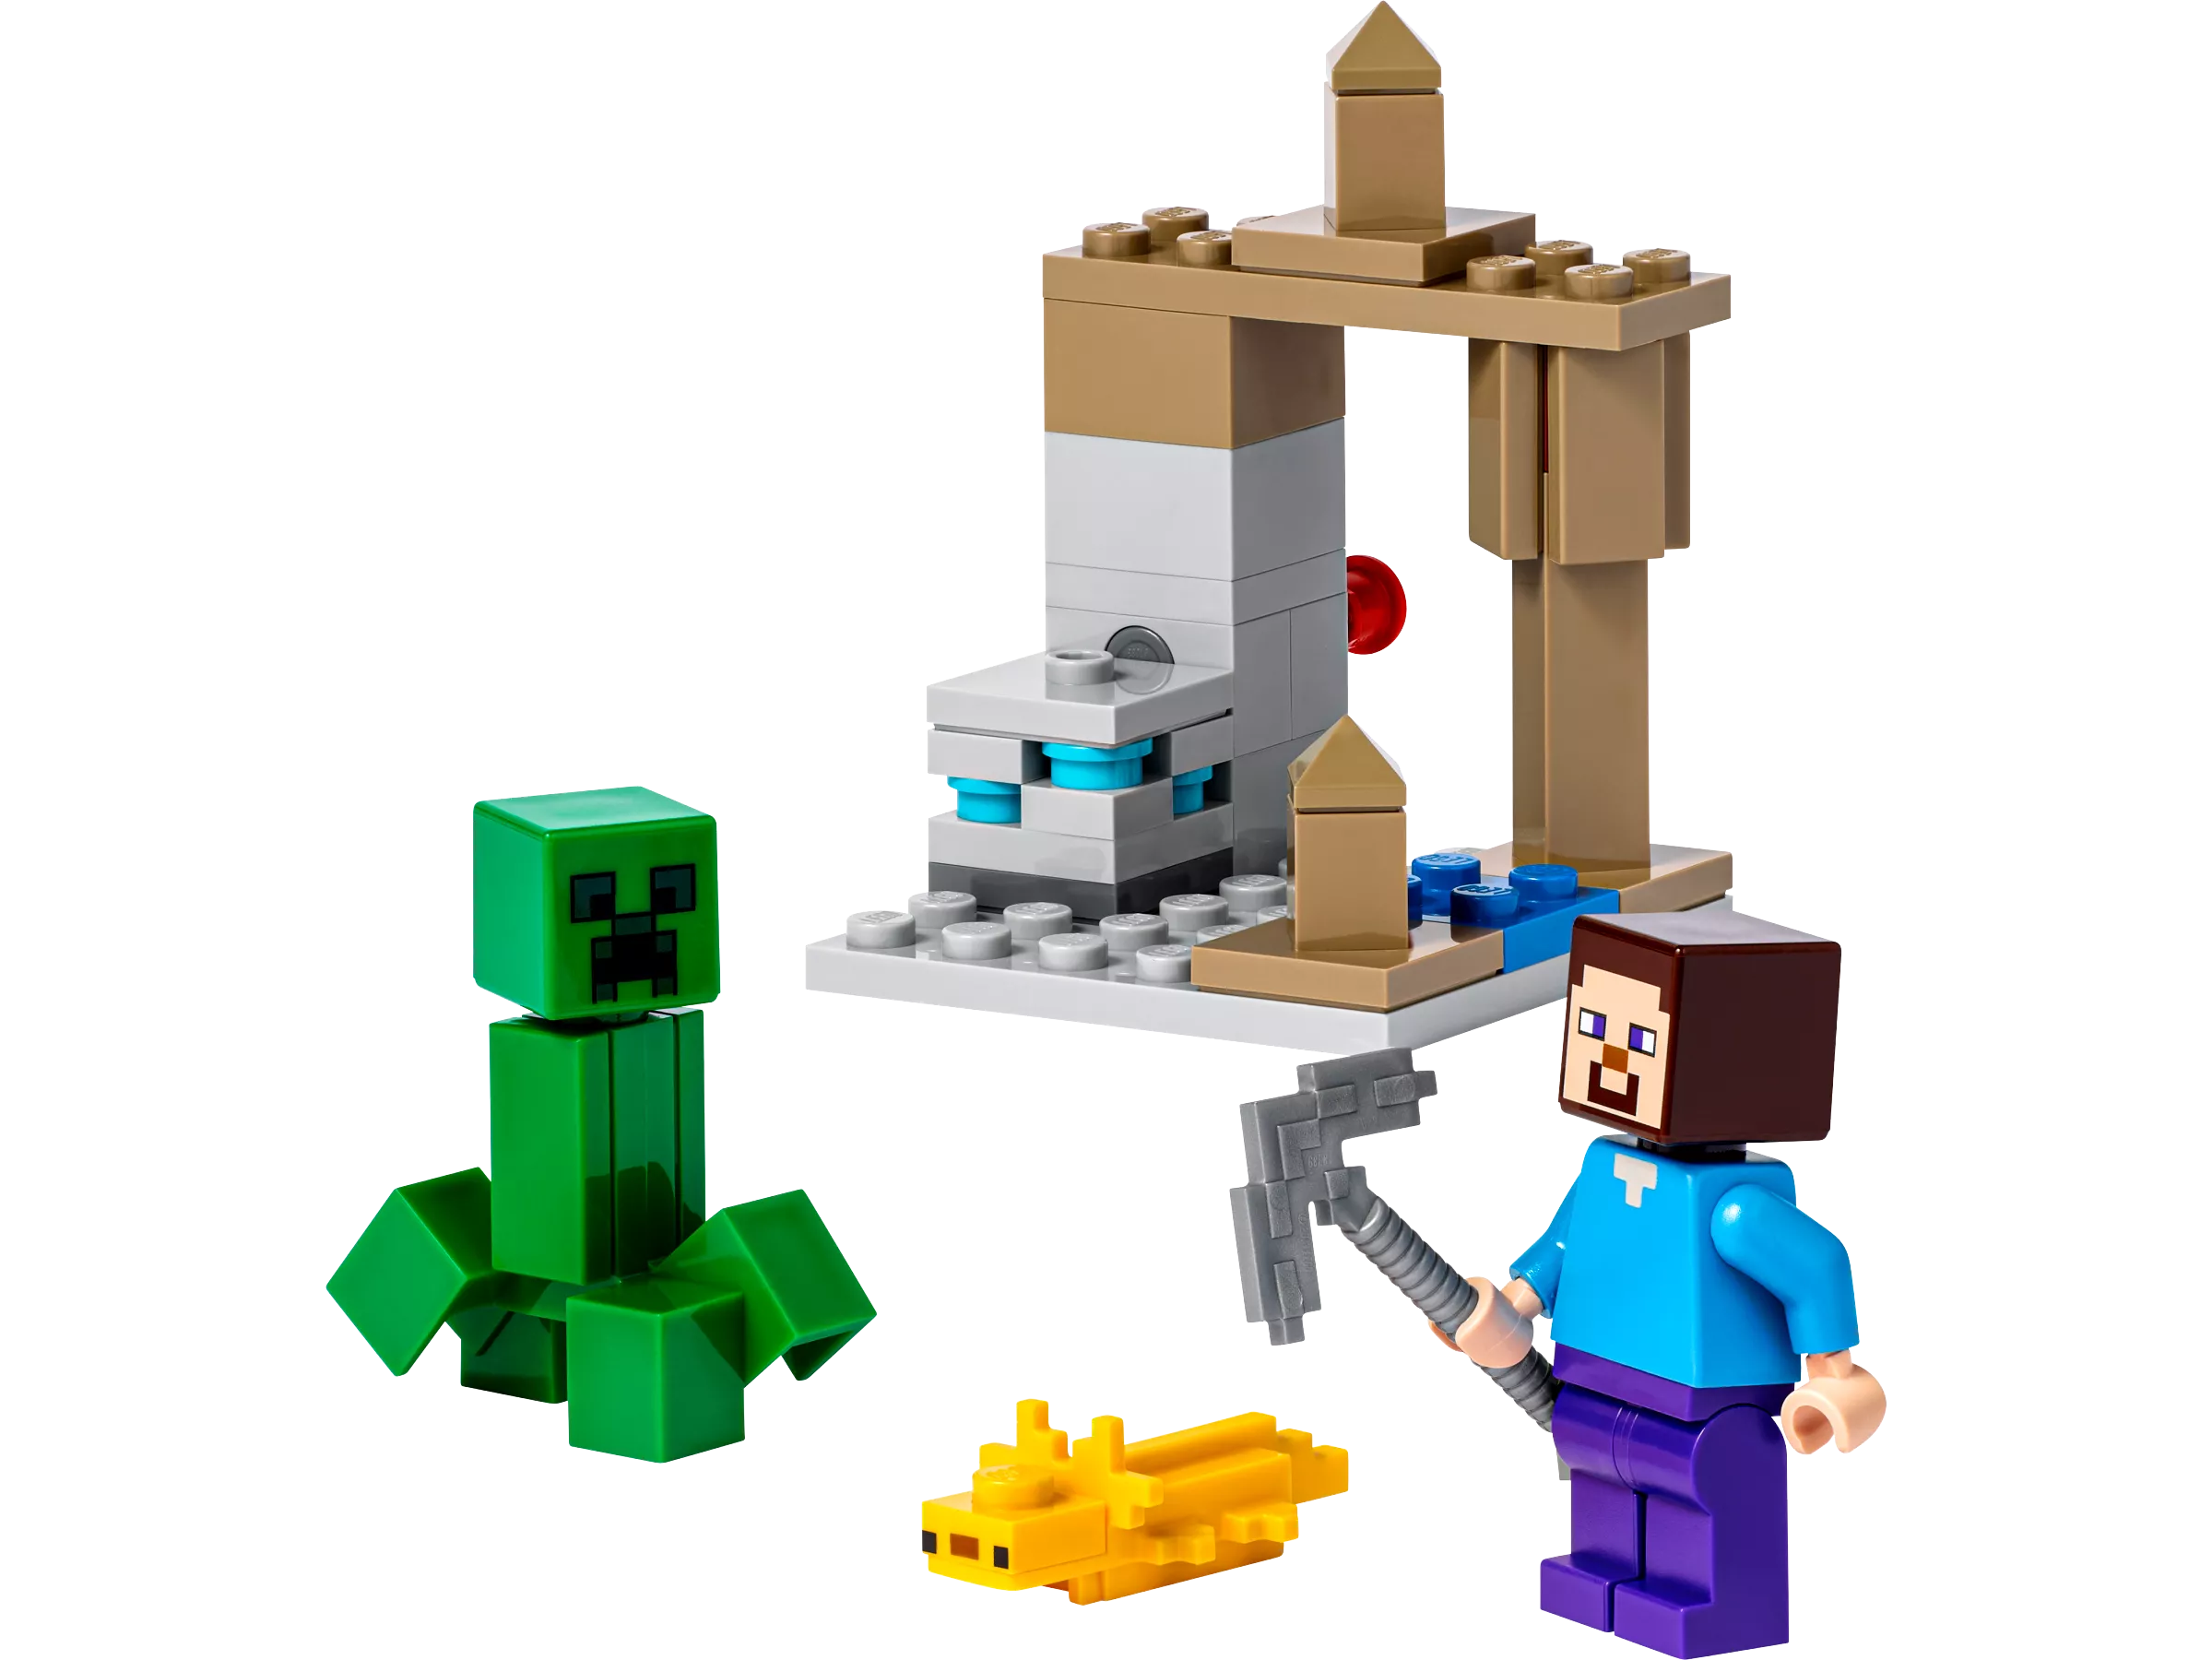 LEGO 30647 Die Tropfsteinhöhle